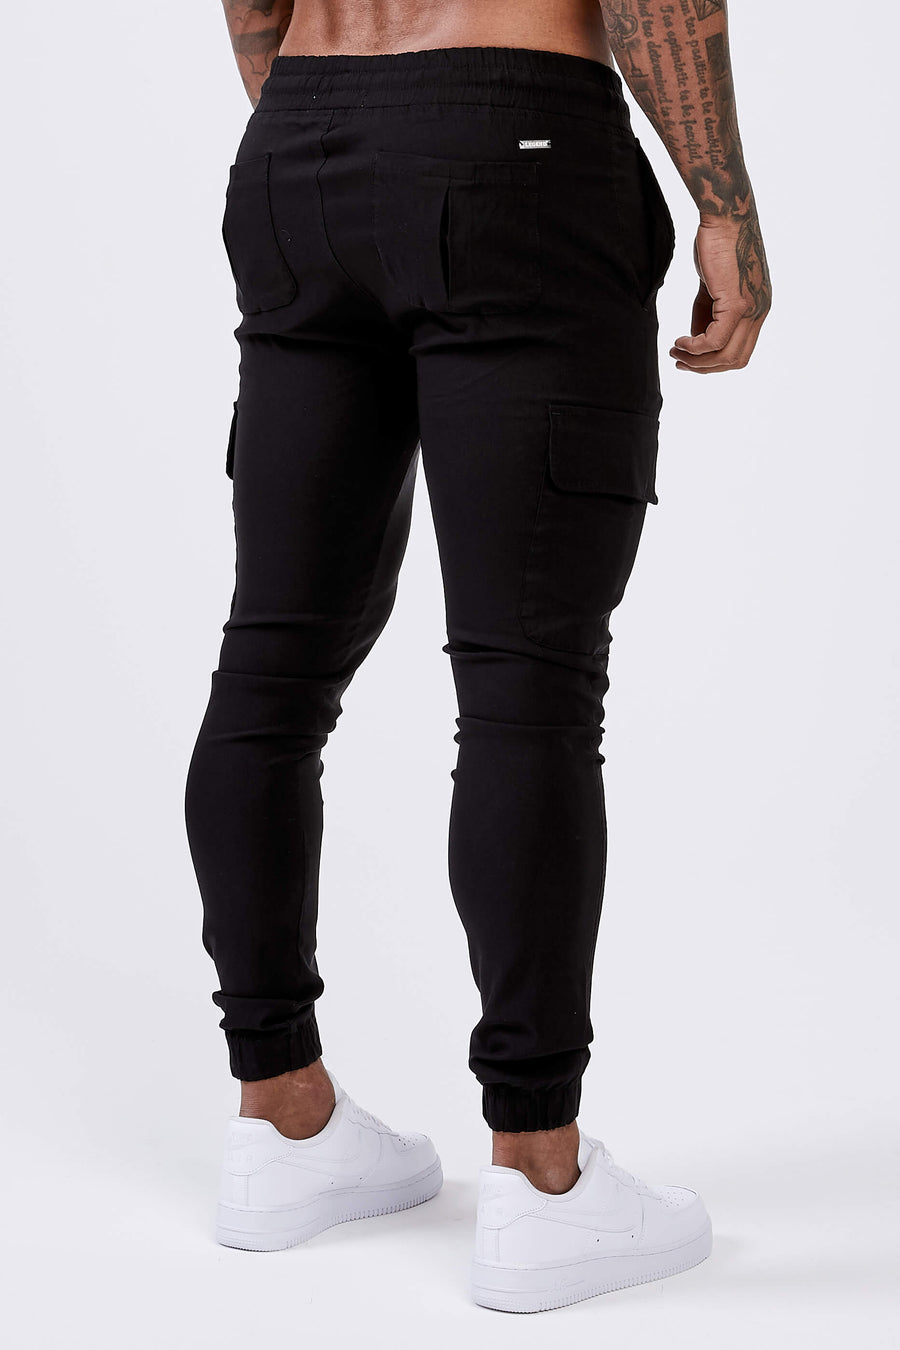 Legend London Trousers SMART CARGO PANT - BLACK